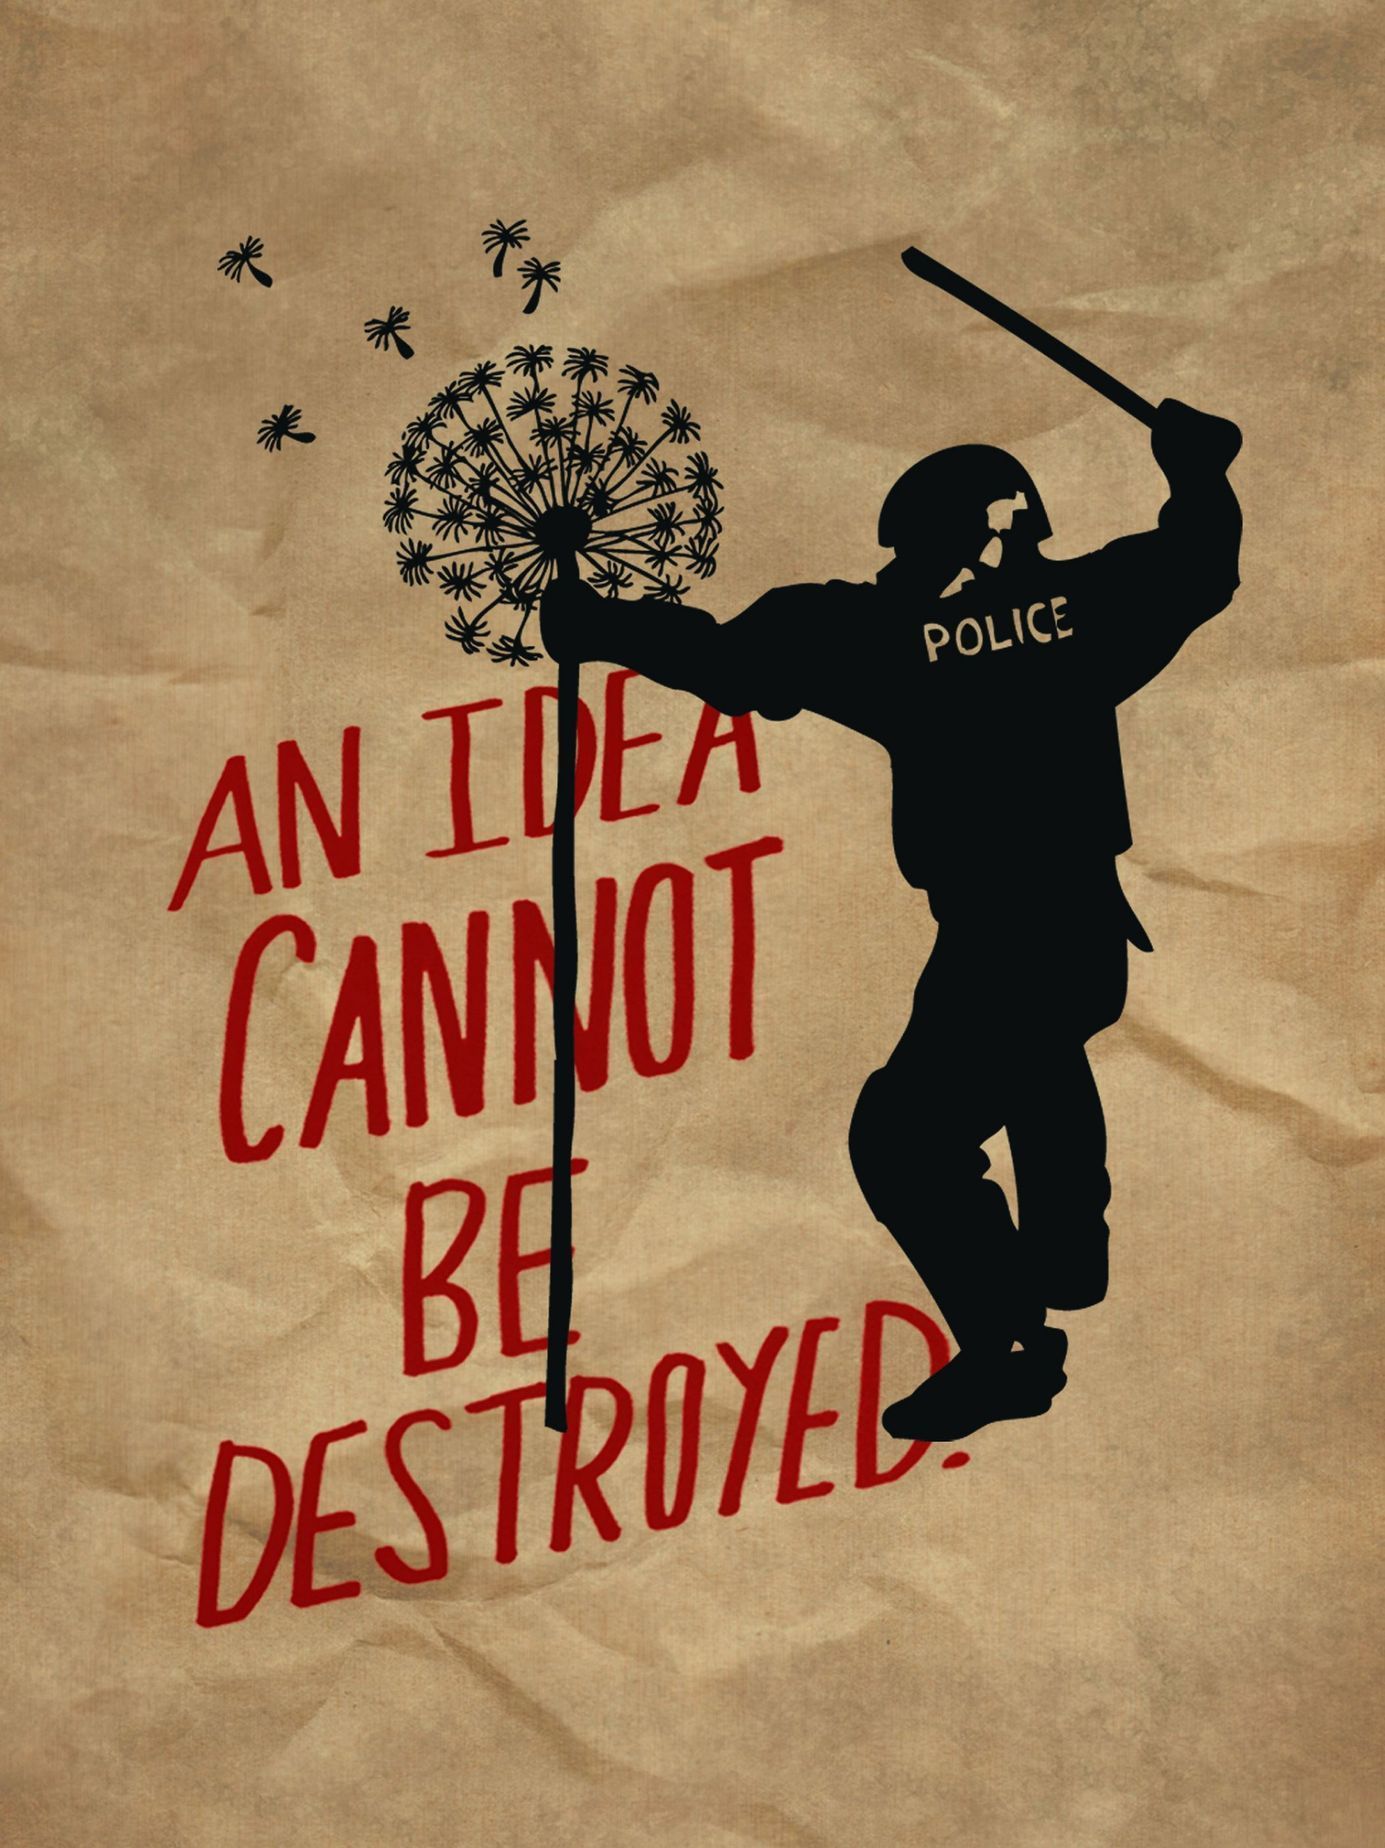 Plakát v souboji ideologií 1914 – 2014